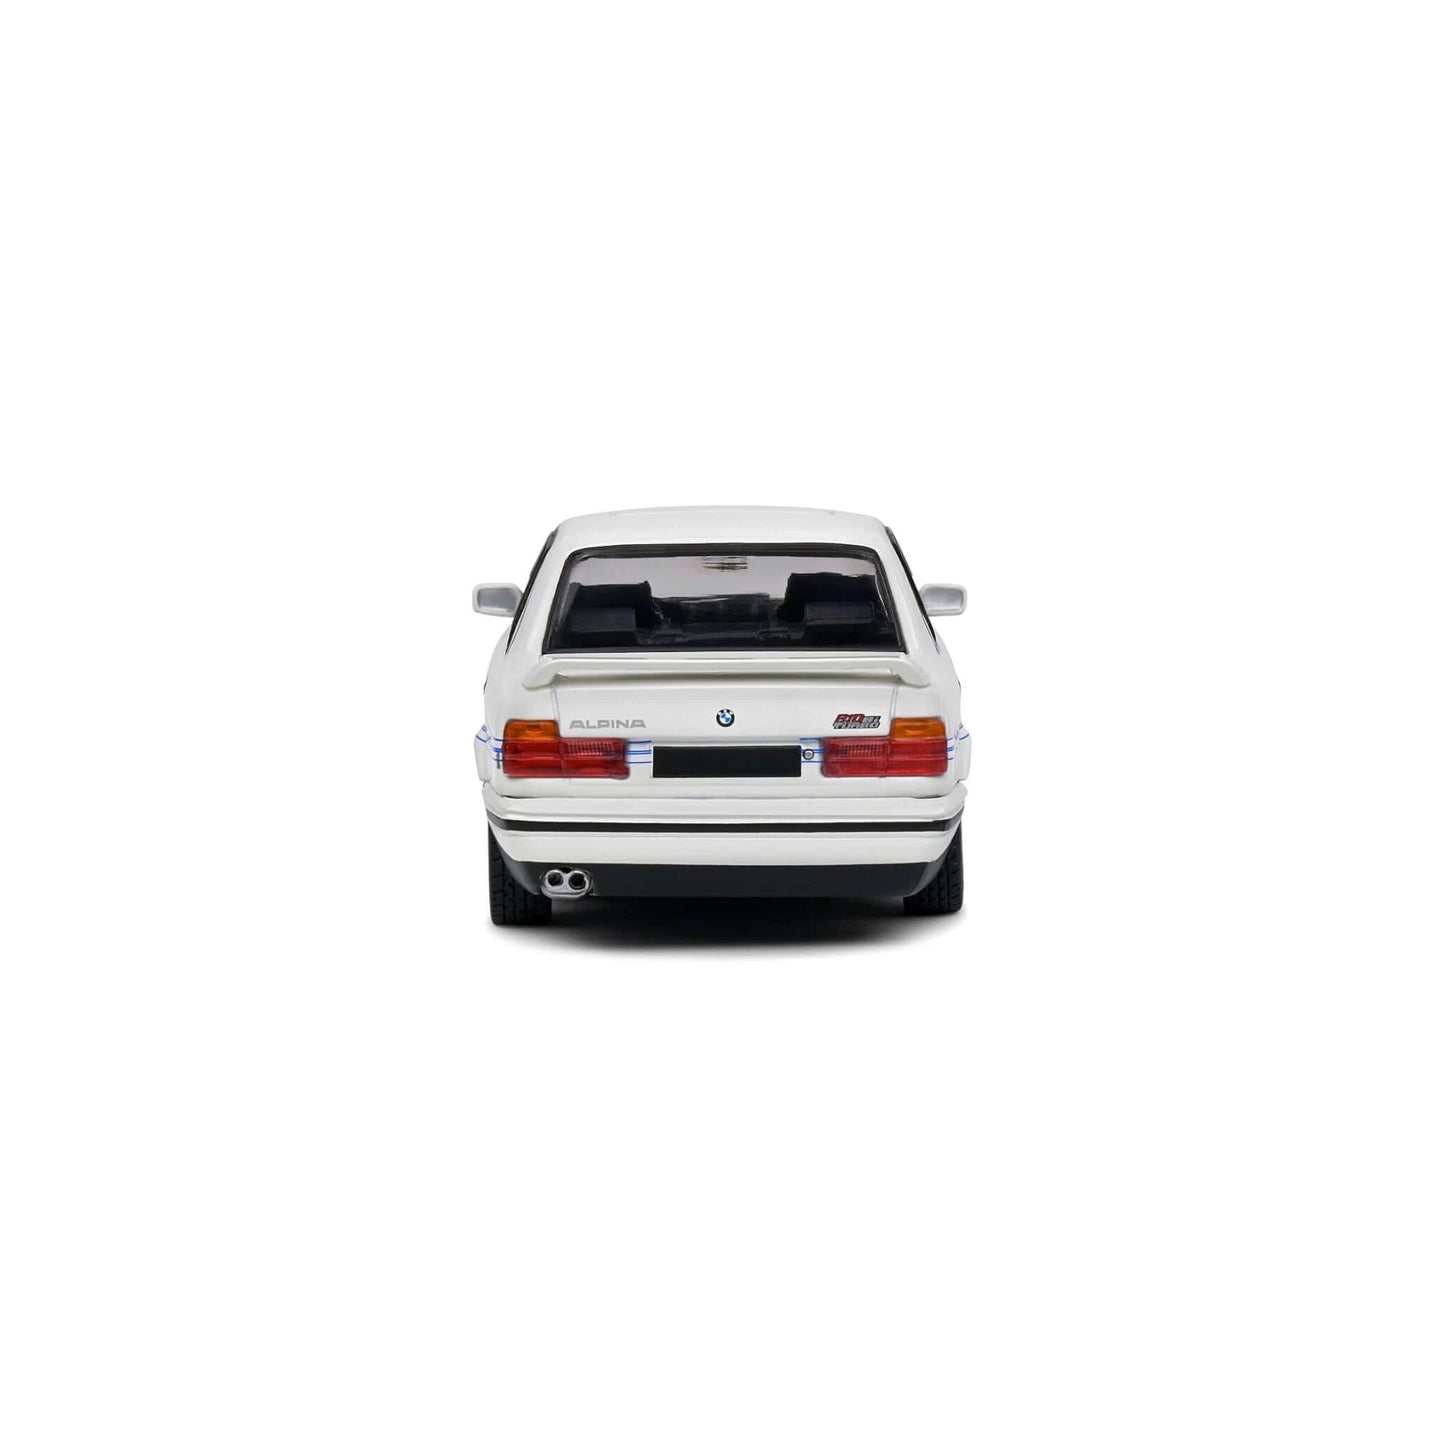 BMW E34 Alpina B10 1994 Blanche Solido 1/43 - S4310404